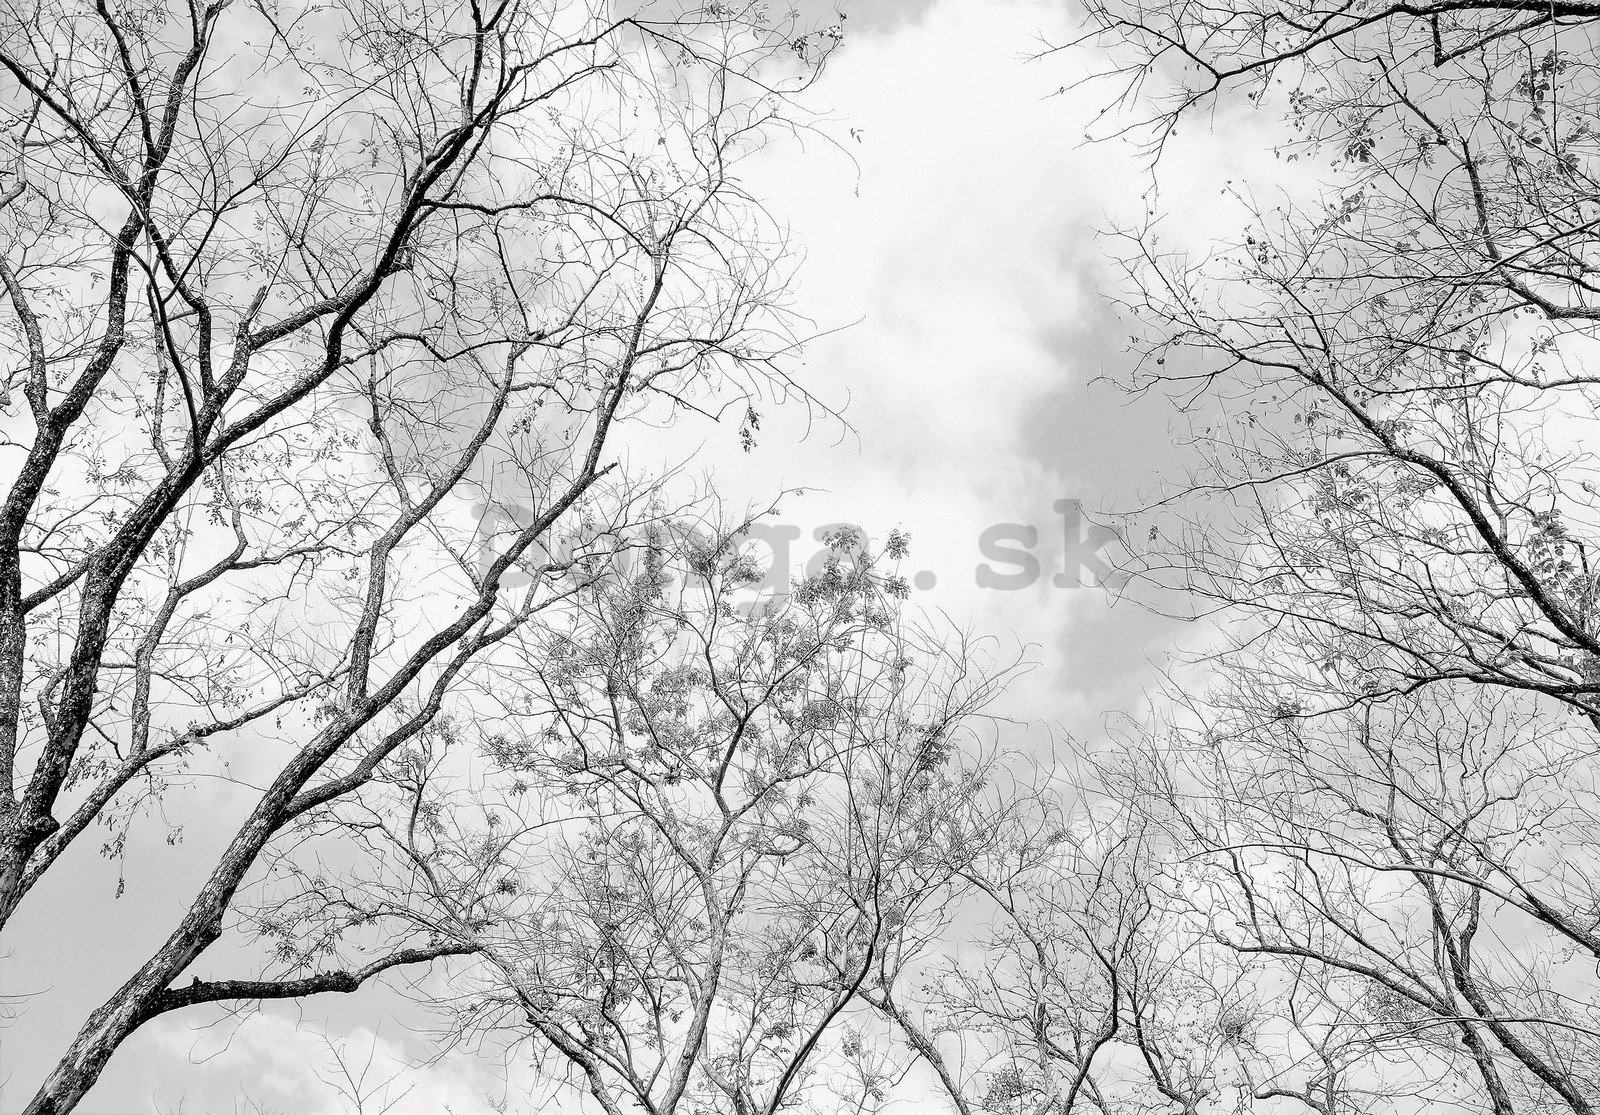 Fototapeta vliesová: Zimní obloha - 152,5x104 cm